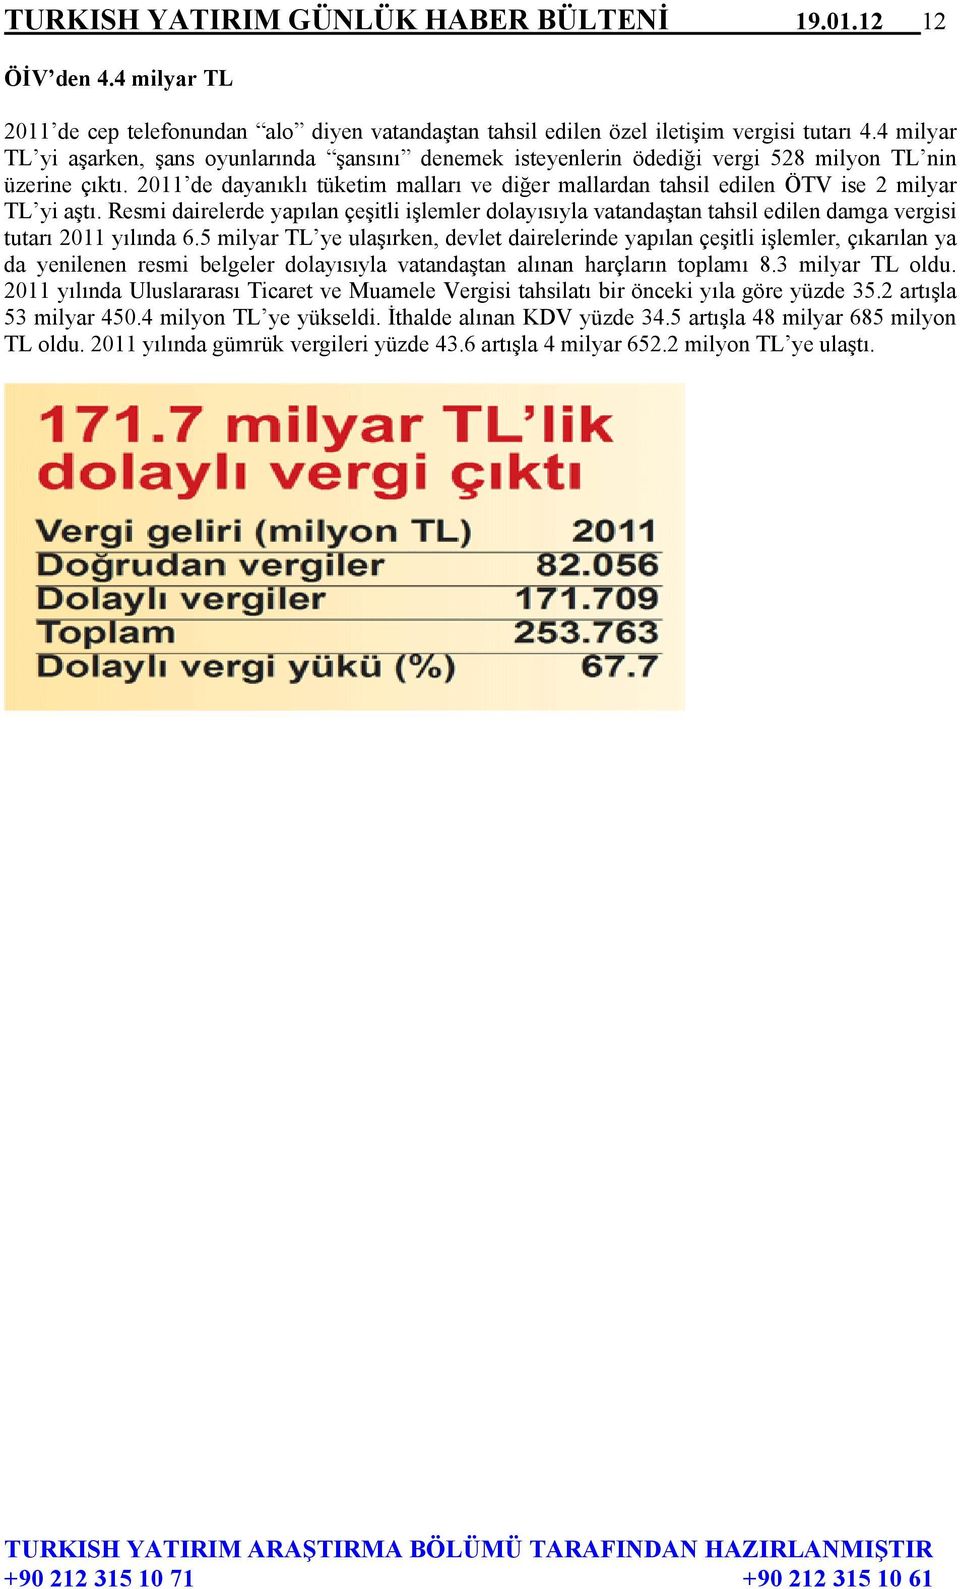 2011 de dayanıklı tüketim malları ve diğer mallardan tahsil edilen ÖTV ise 2 milyar TL yi aştı.